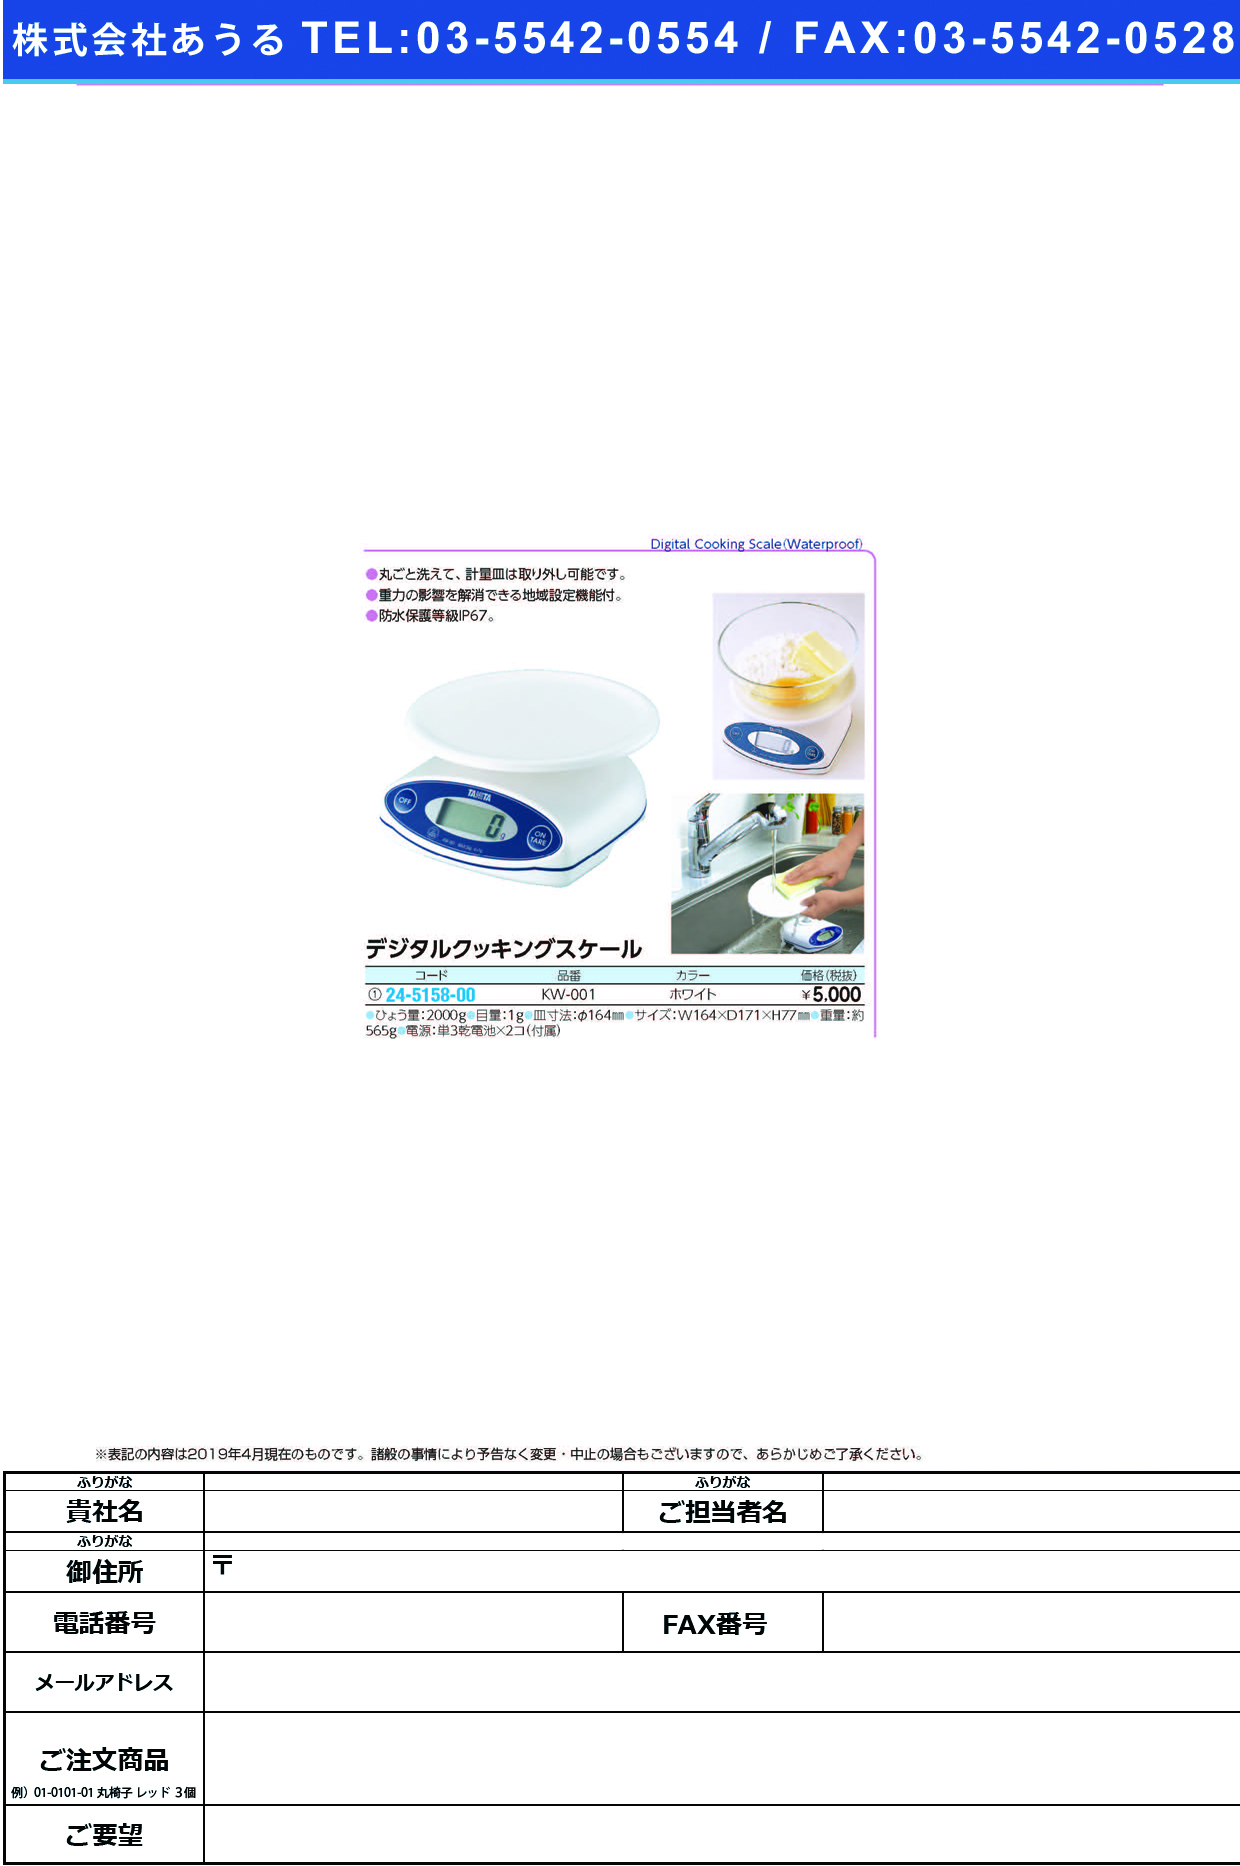 (24-5158-00)デジタルクッキングスケール KW-001(ﾎﾜｲﾄ) ﾃﾞｼﾞﾀﾙｸｯｷﾝｸﾞｽｹｰﾙ(タニタ)【1台単位】【2019年カタログ商品】